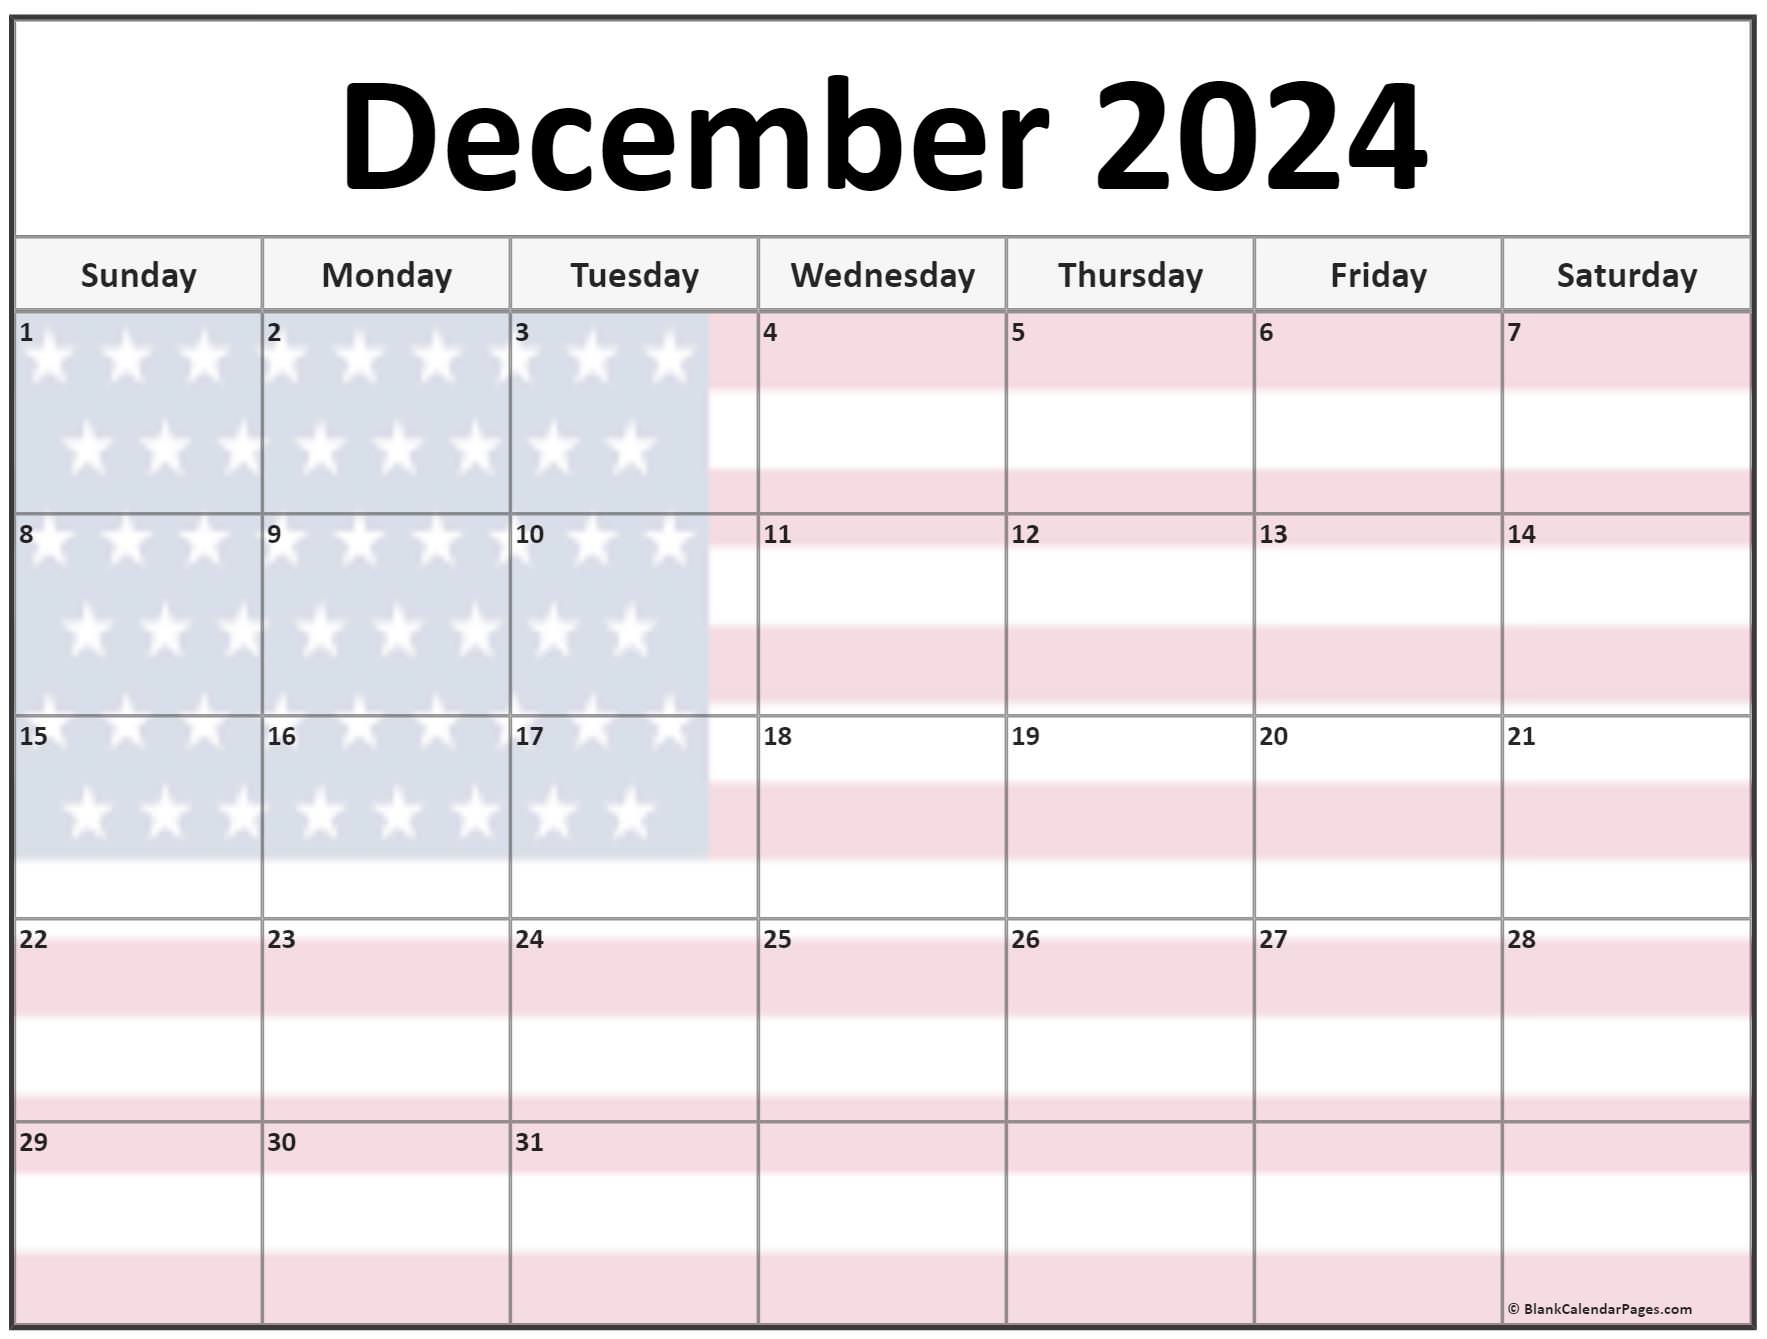 December 2024 Calendar Events